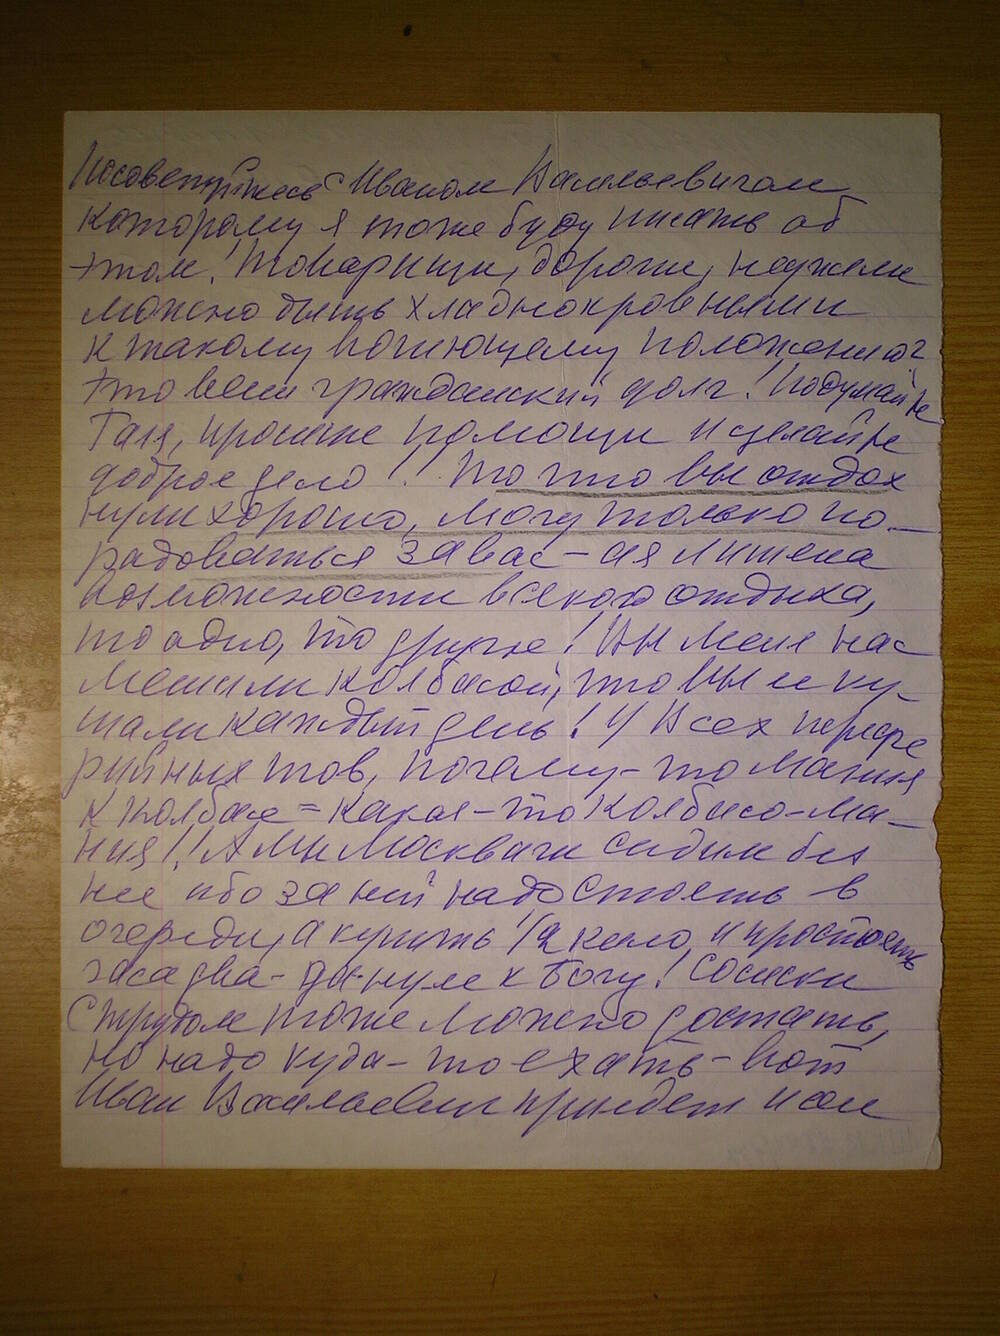 Фрагмент письма от Мазуровой Е.Я. Комаровой Г.Н. личного характера. Г. Москва.